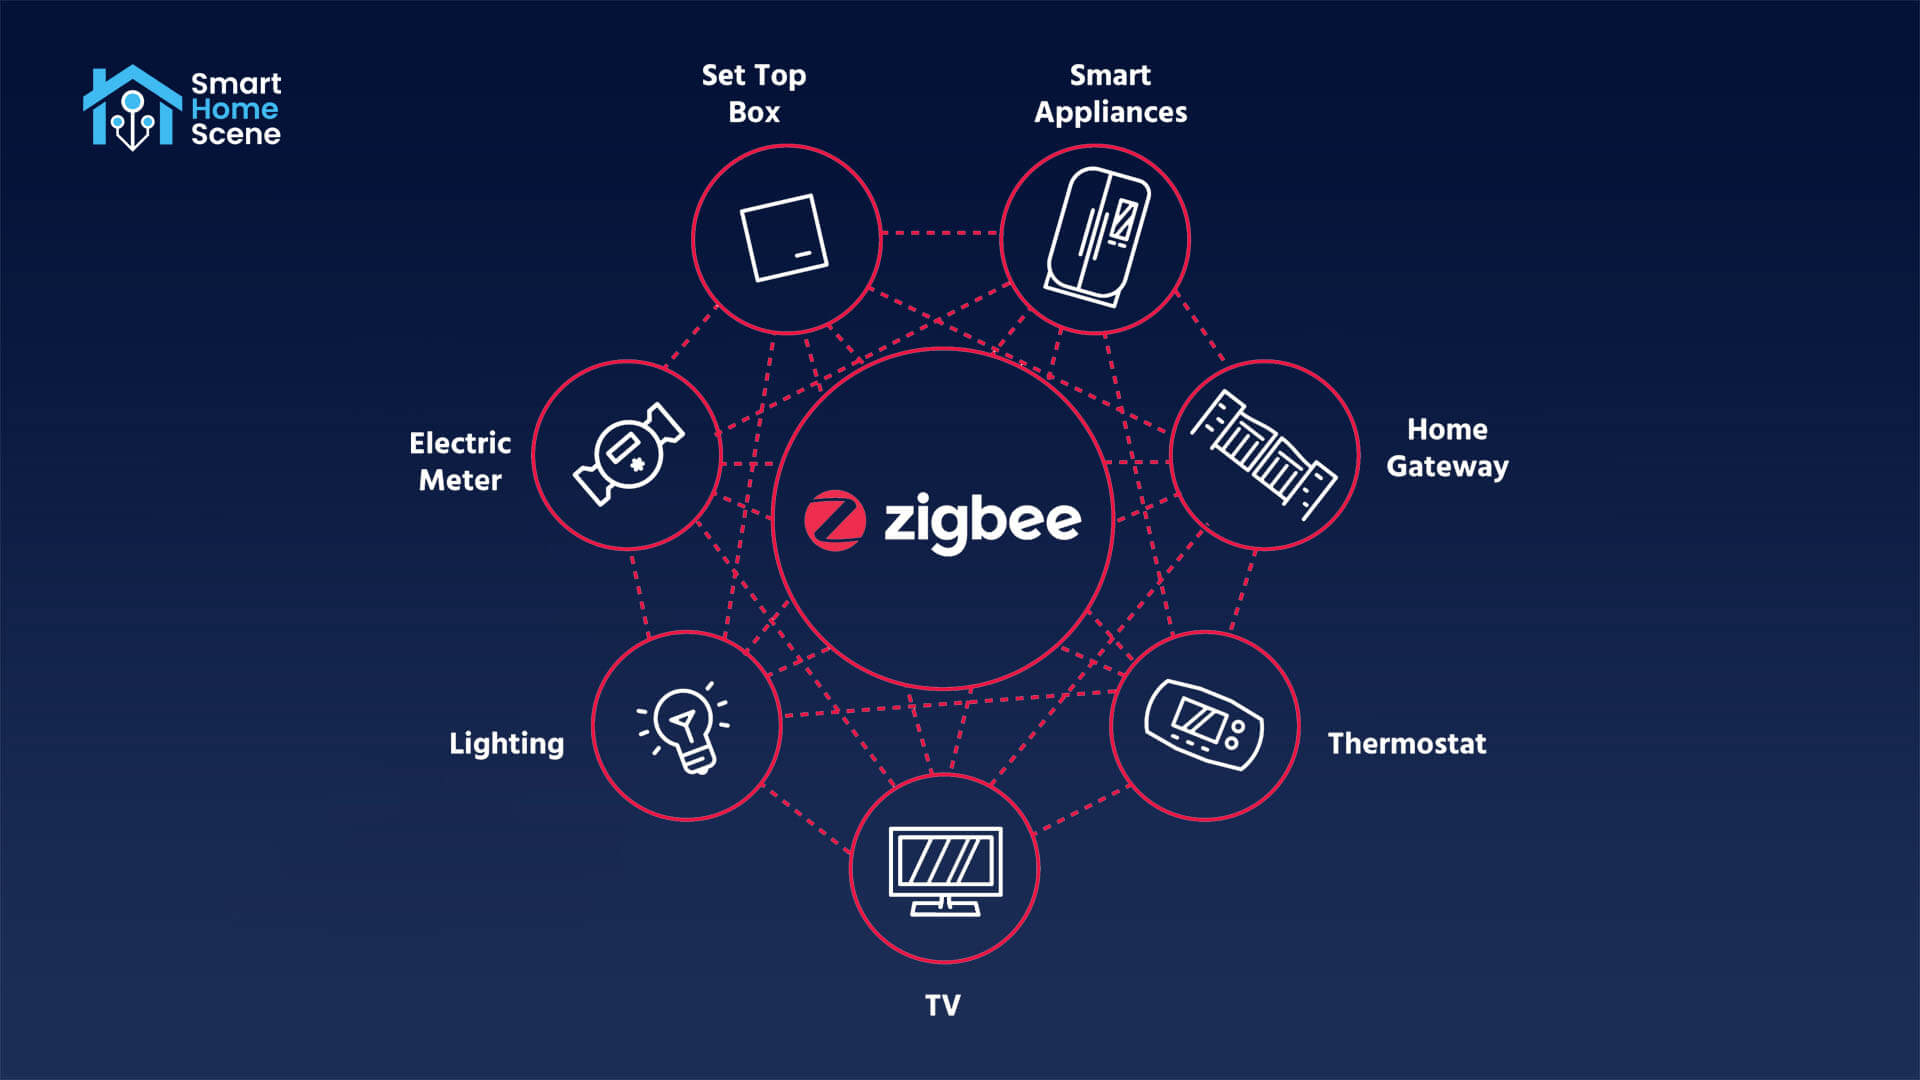 E0824: Una red Zigbee estable y robusta